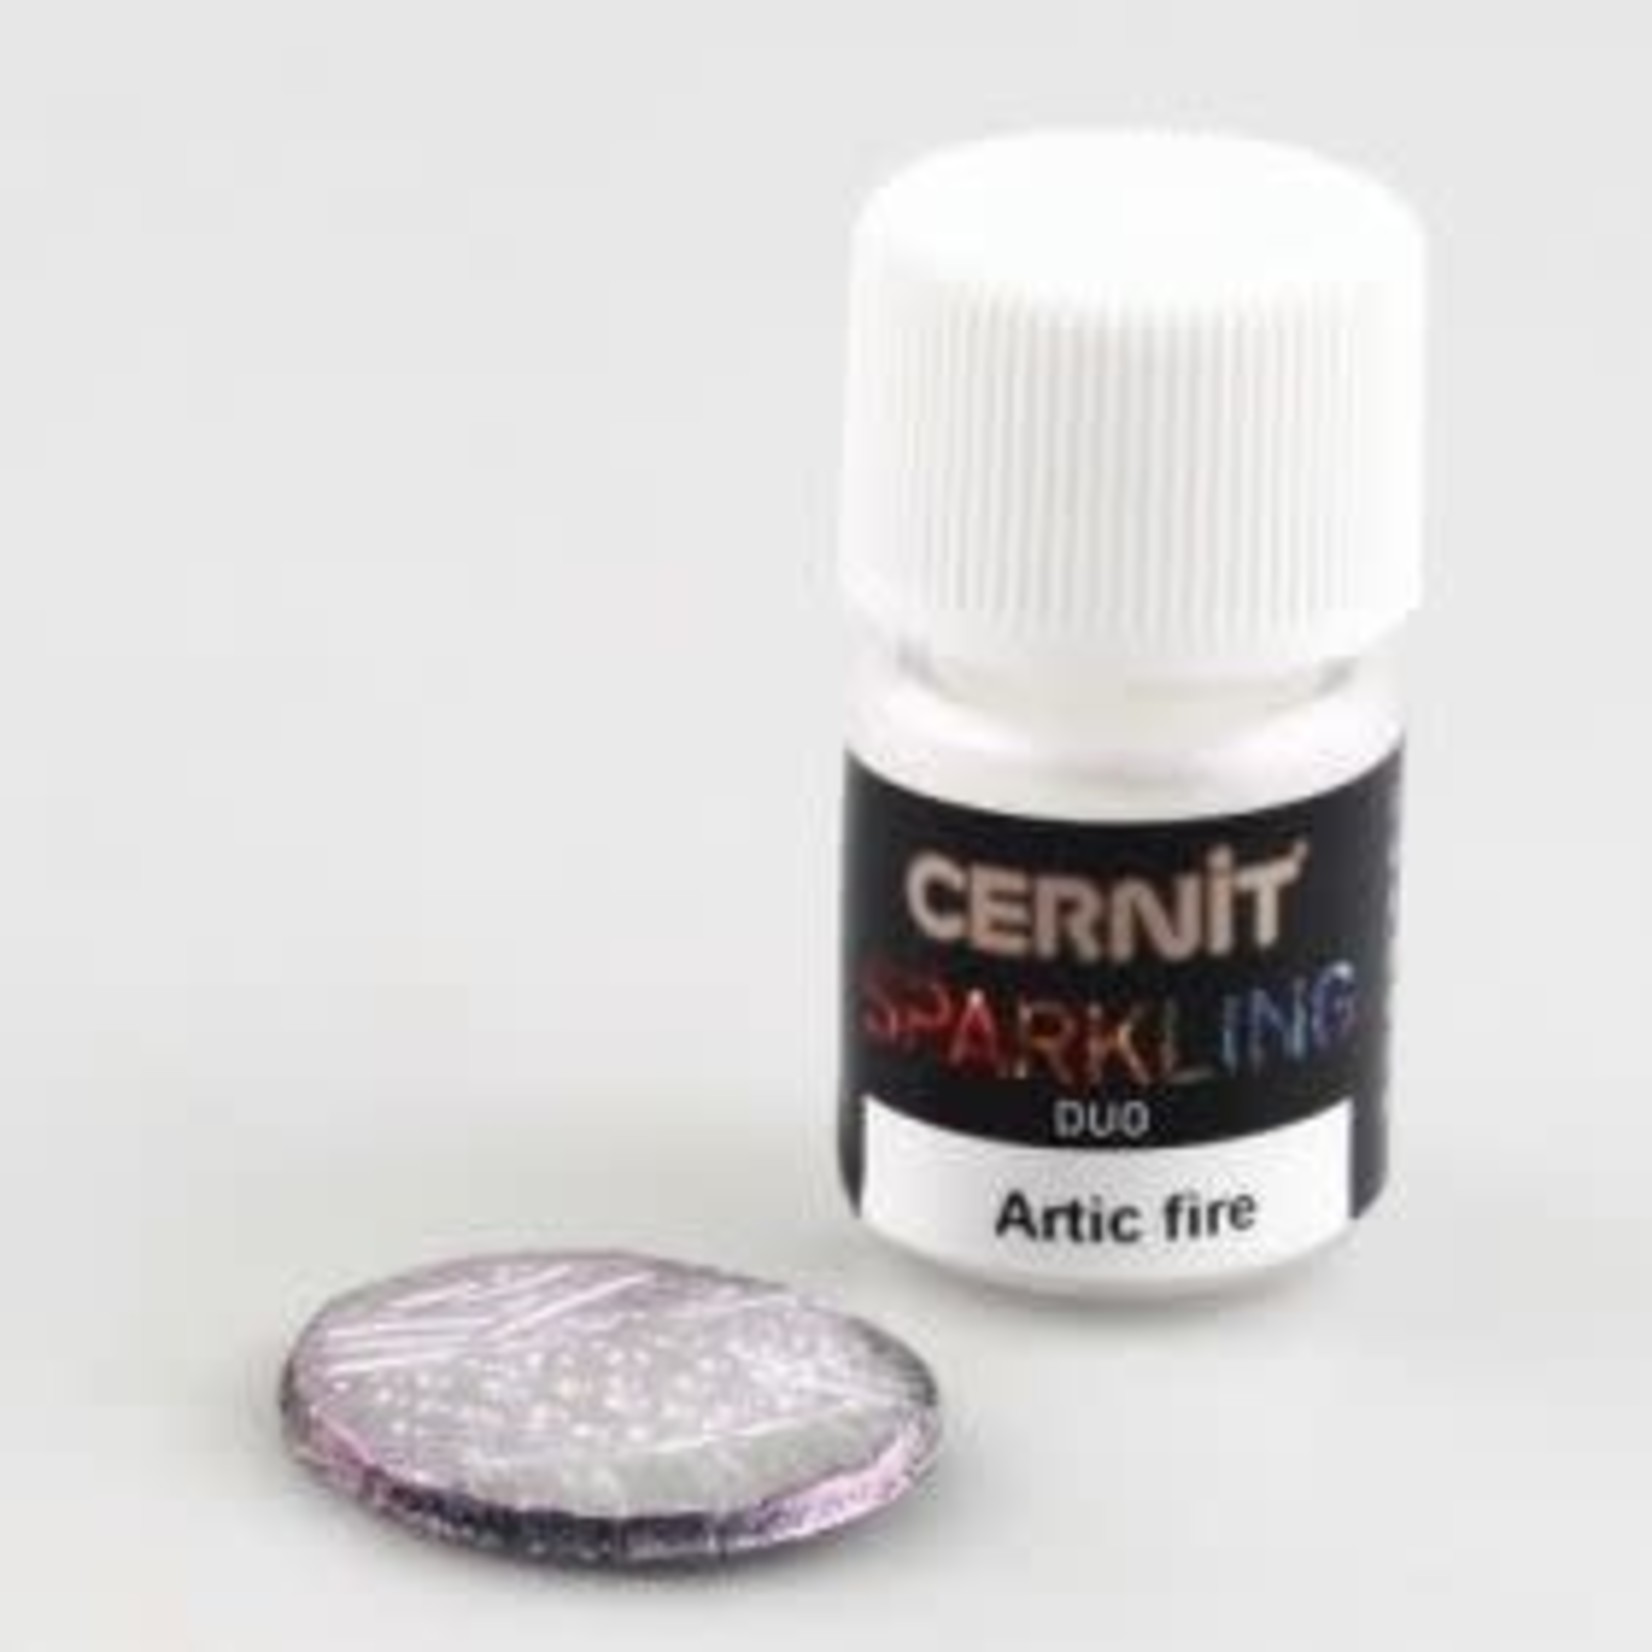 Cernit Cernit Sparkling Duo Artic Fire 2 Gr